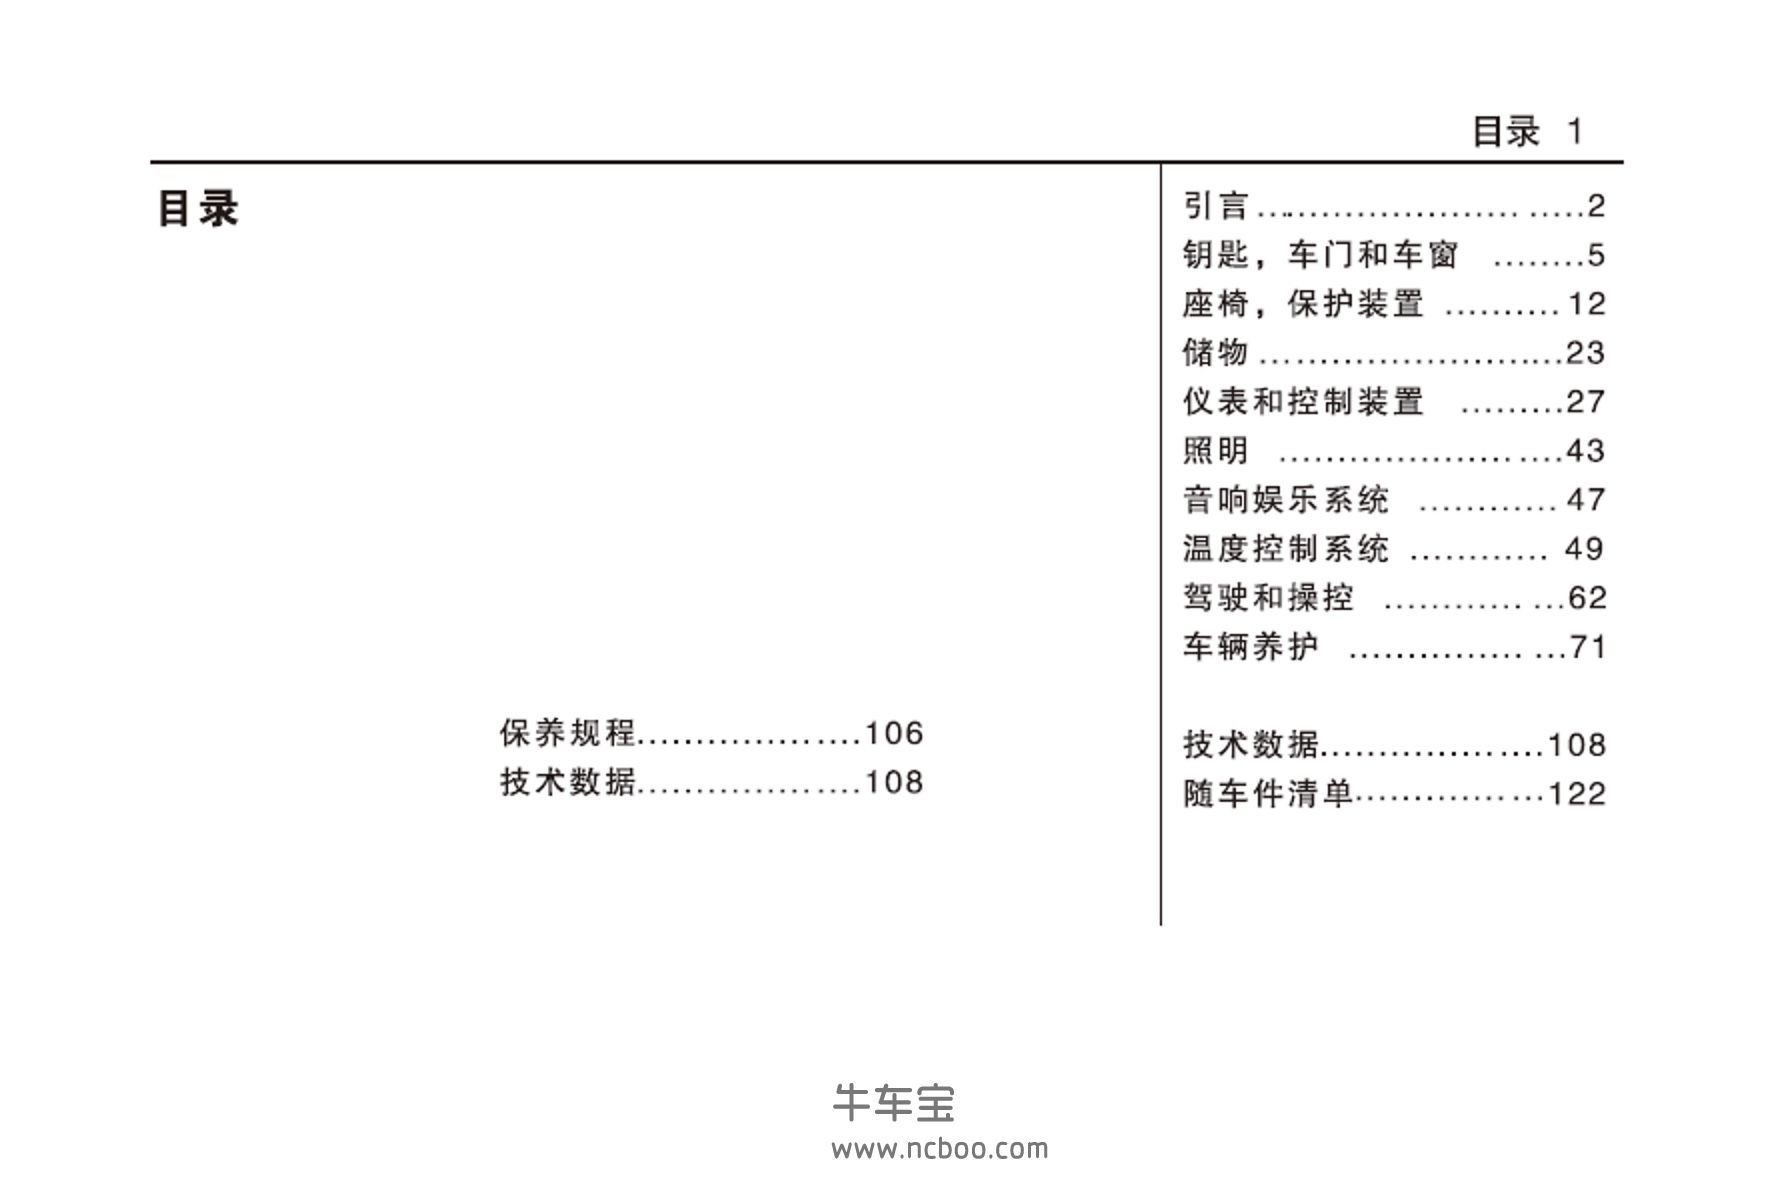 2021年五菱之光产品使用说明书-用户手册PDF电子版下载